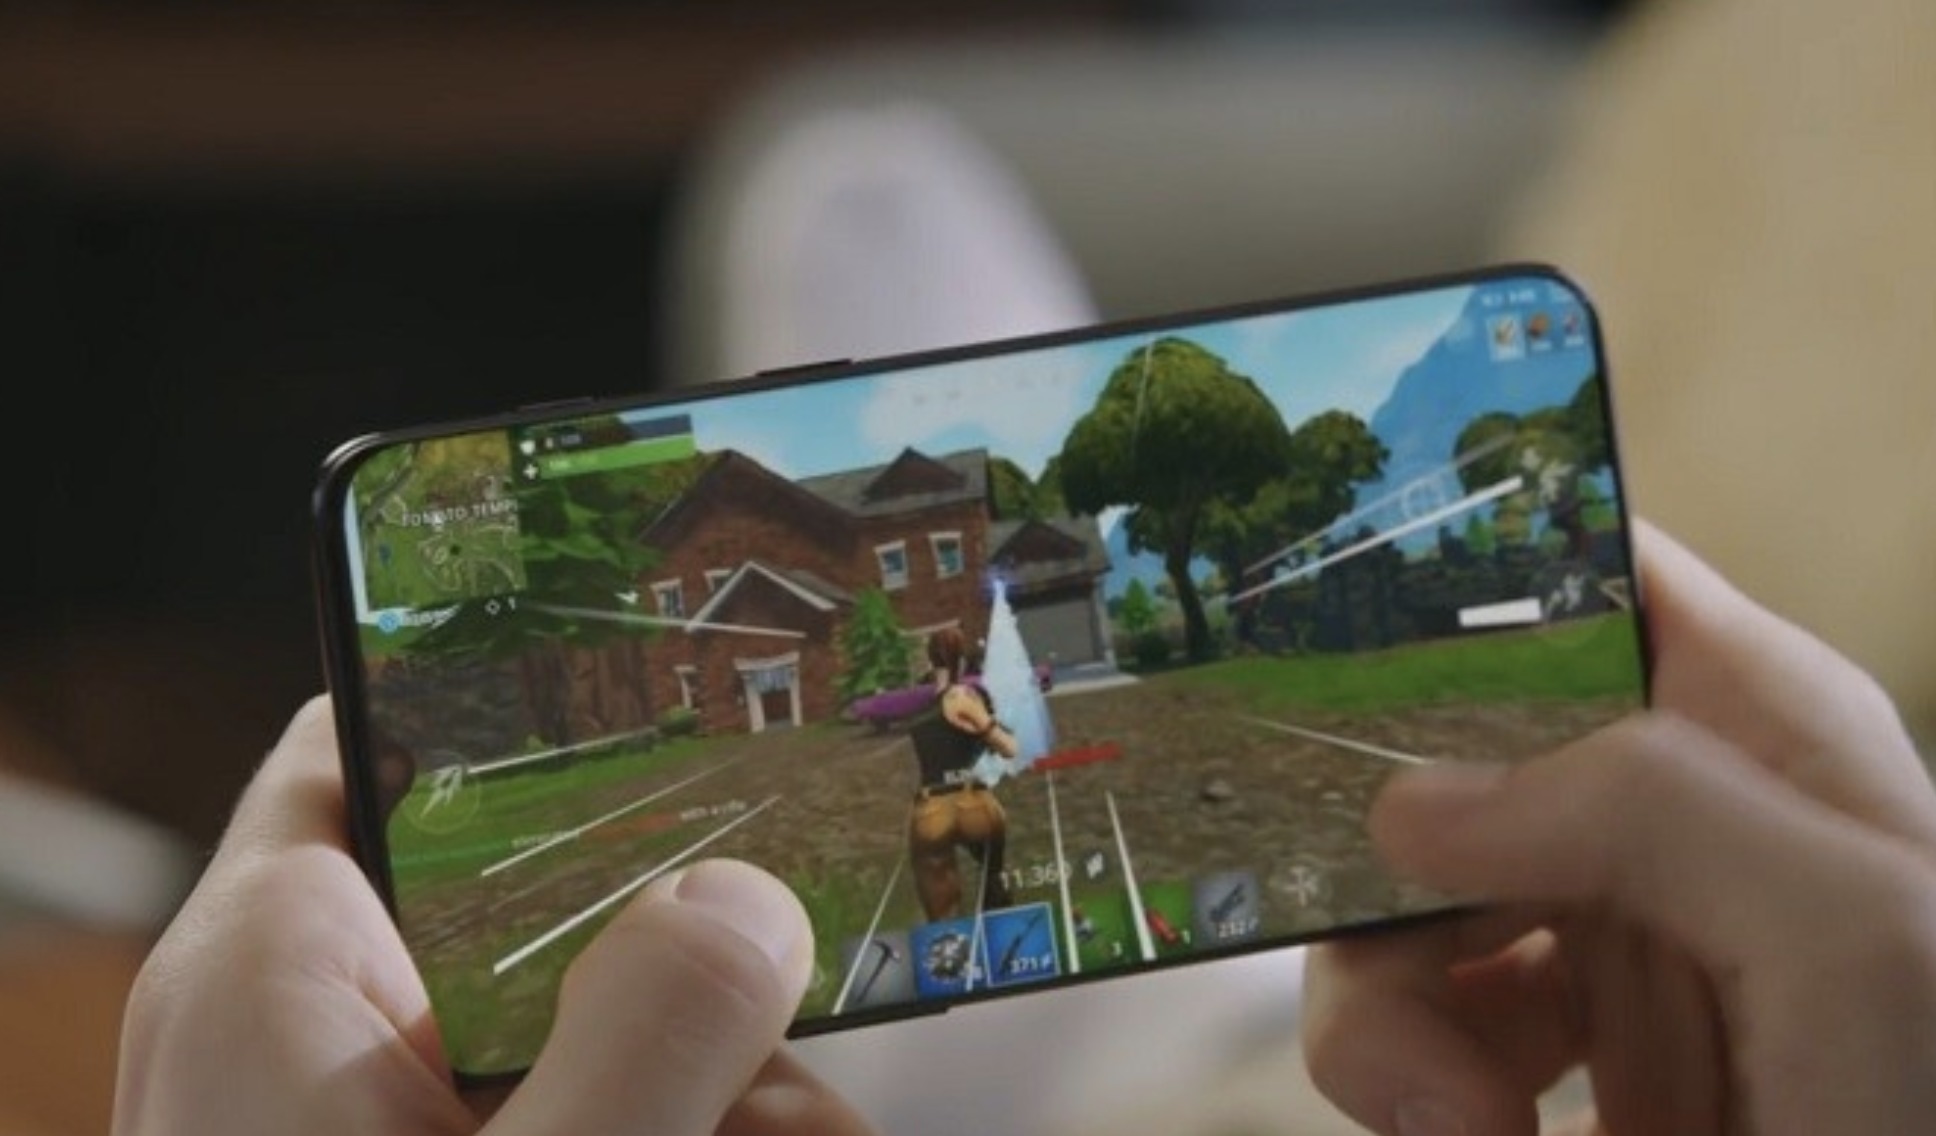 Fortnite ser bra ut på OnePlus 6T, men det dekker nok nok ikke så mye av frontpanelet som dette bildet viser.